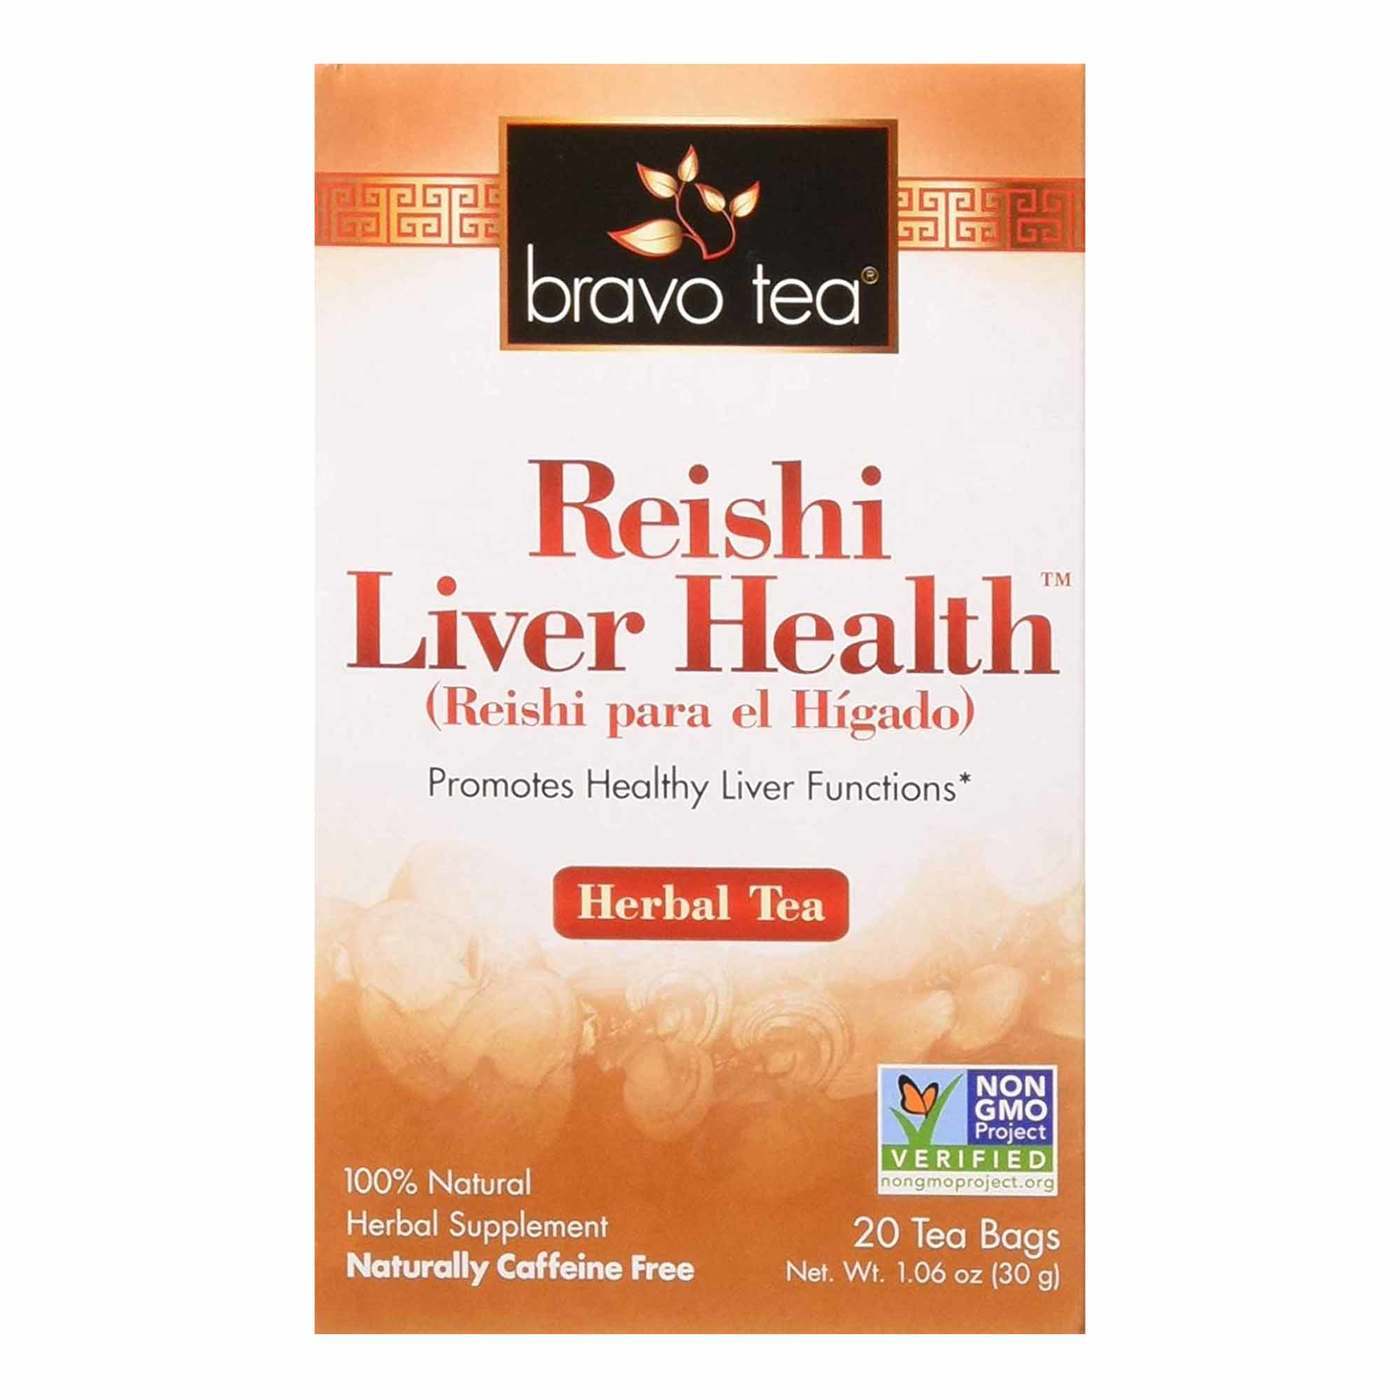 Bravo Tea Reishi Liver Health Tea - 20 Bags - eVitamins.com